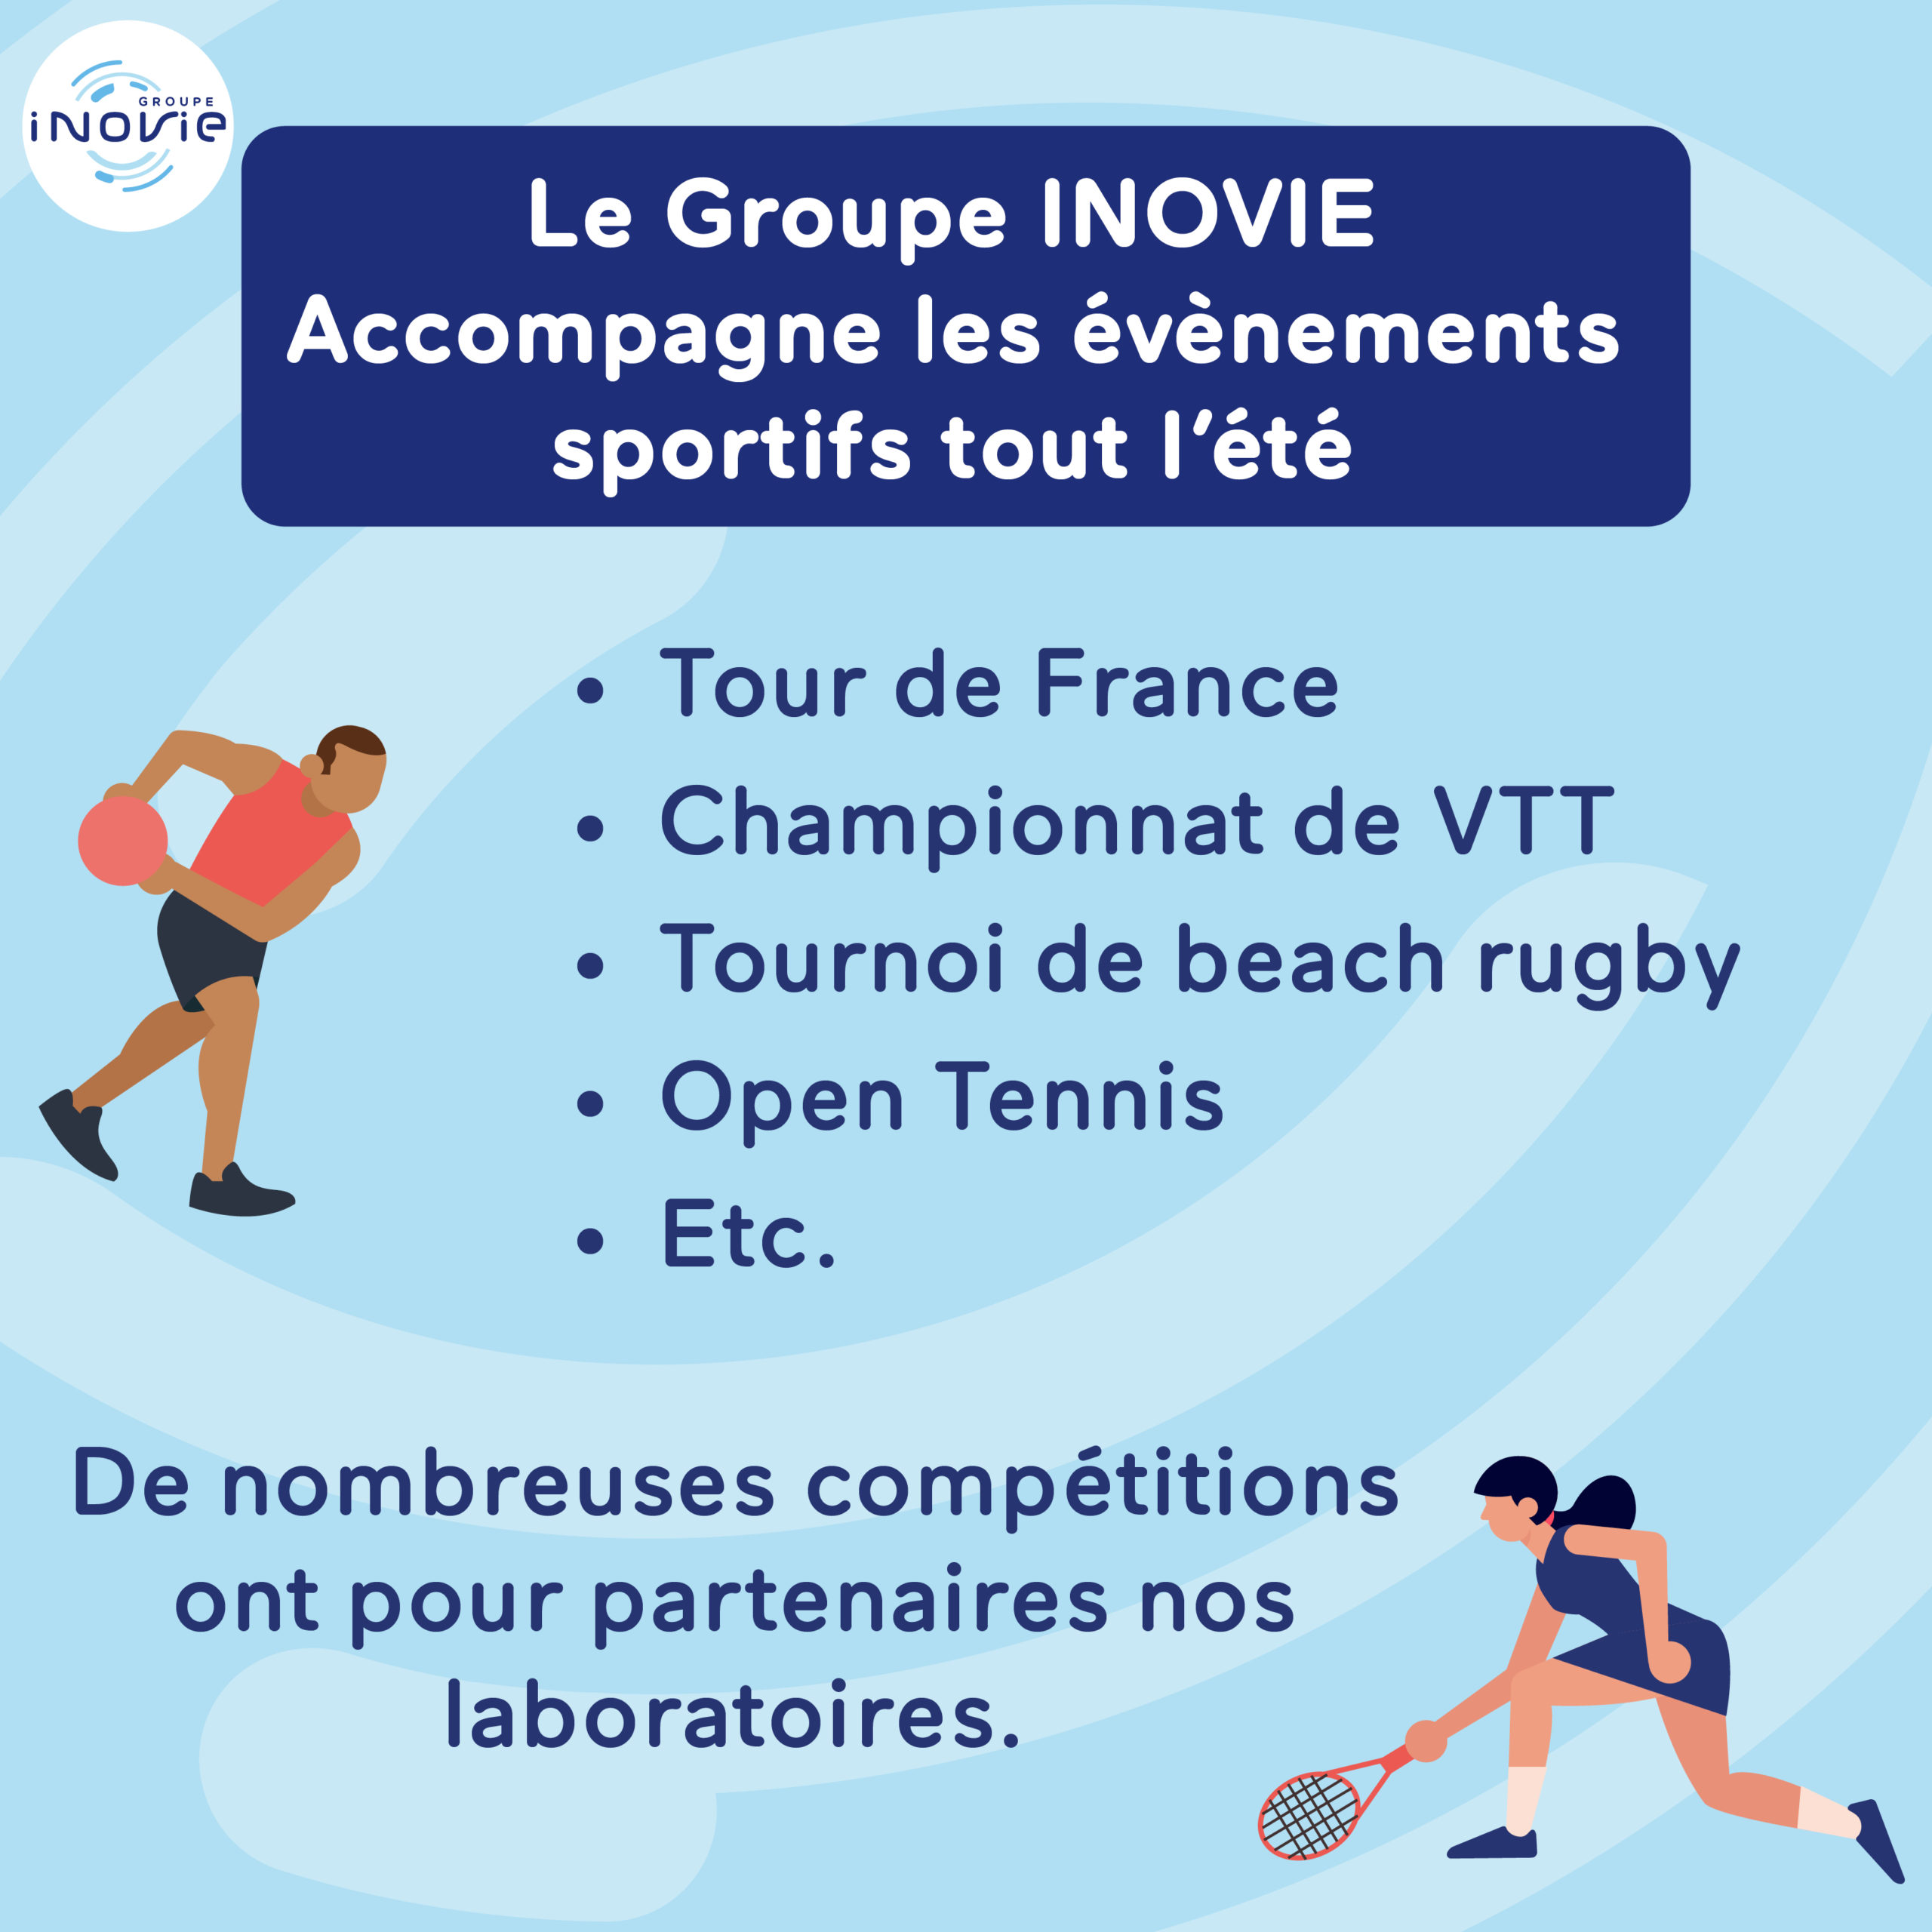 Les laboratoires du Groupe INOVIE se mobilisent pour accompagner les évènements sportifs de l'été :